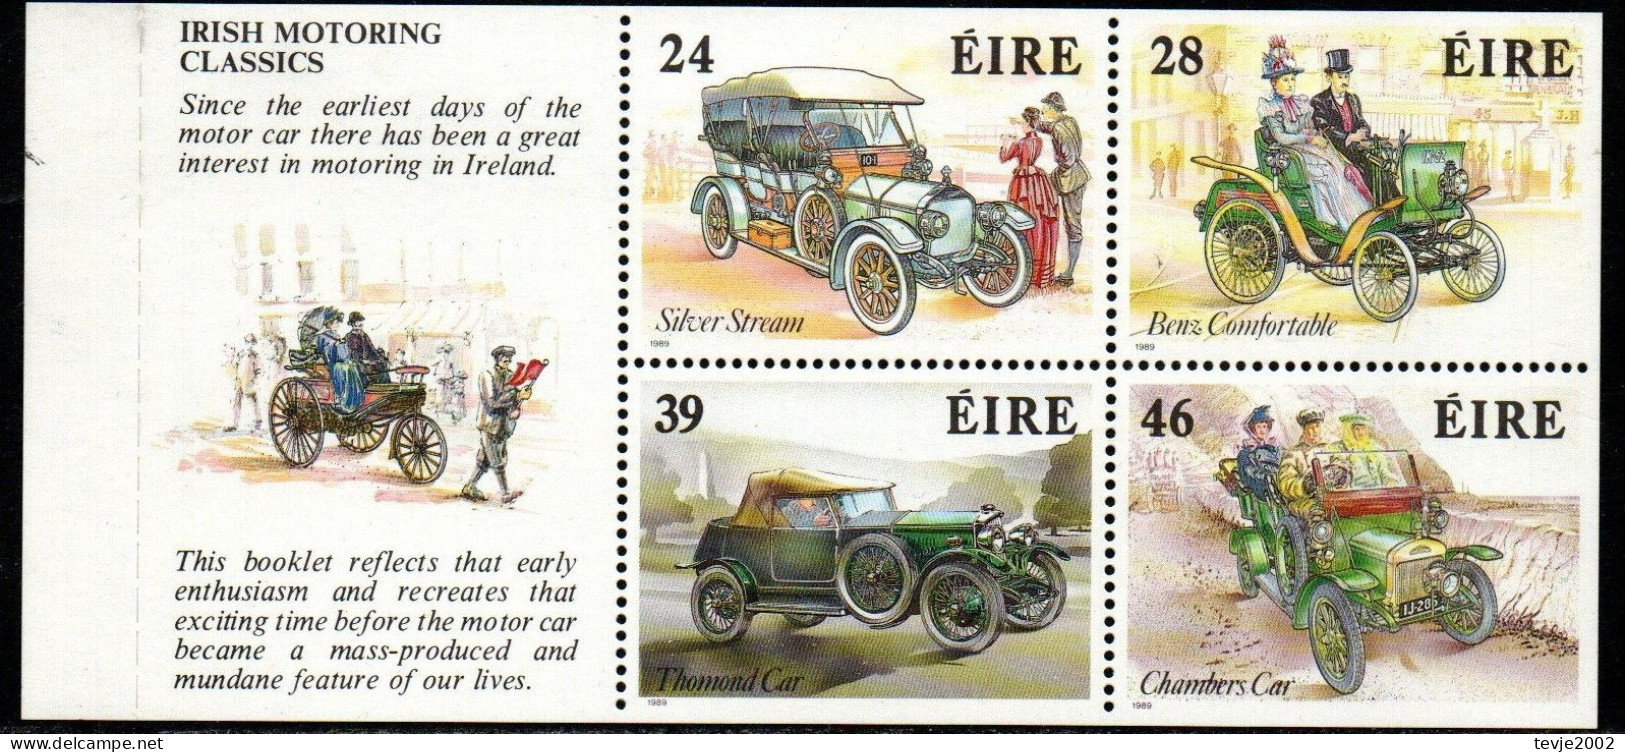 Irland Eire 1989 - Mi.Nr. 671 - 674 E (aus Markenheftchen) - Postfrisch MNH - Autos Cars Oldtimer - Neufs